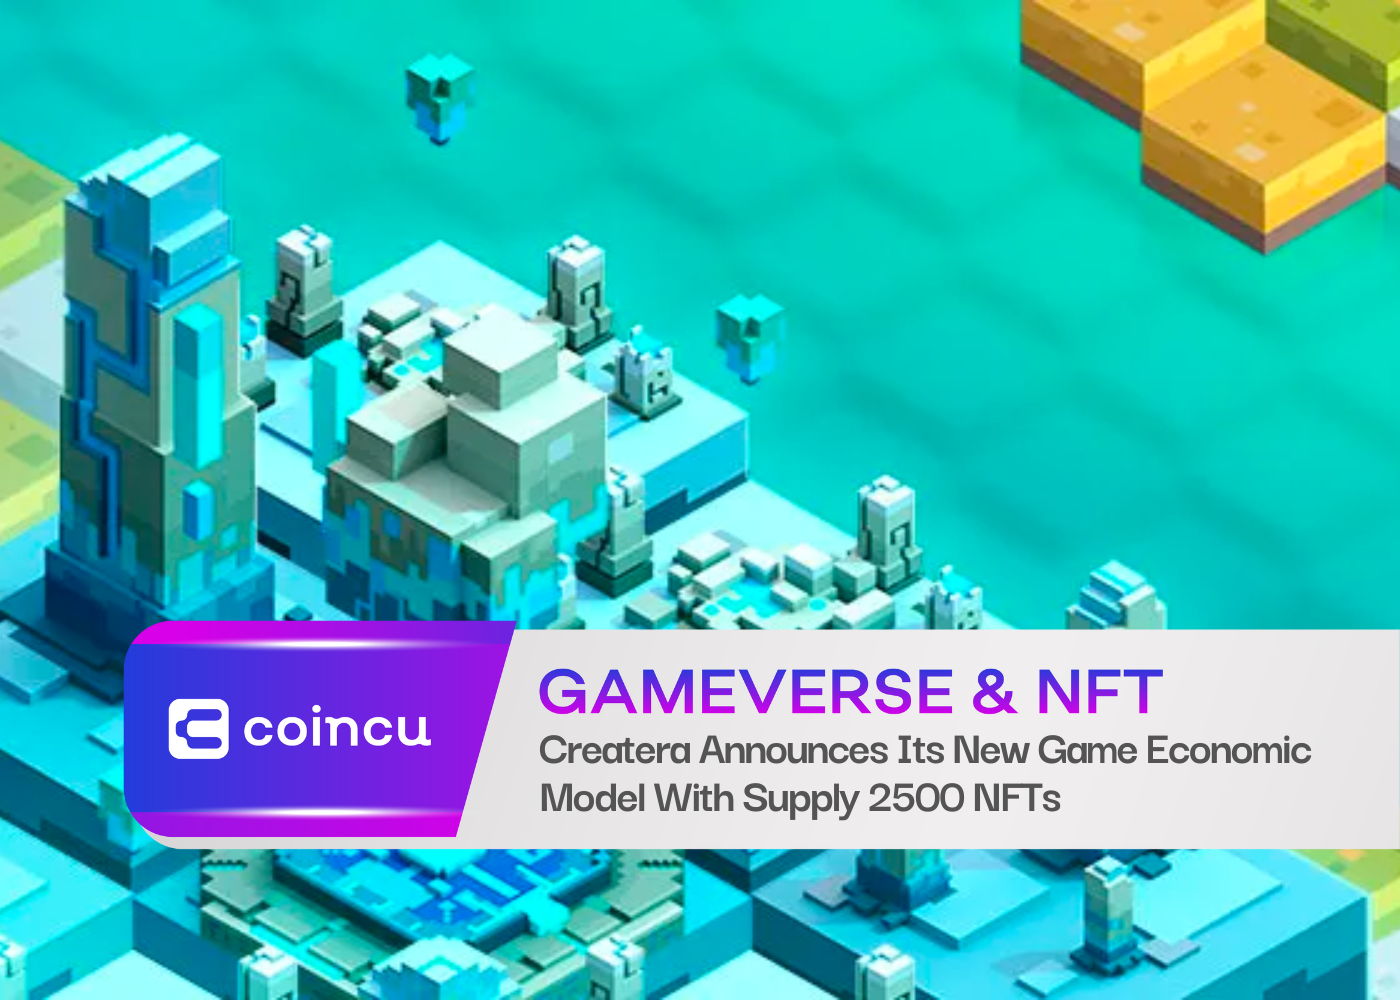 क्रिएटेरा ने 2500 एनएफटी की आपूर्ति के साथ अपने नए गेम इकोनॉमिक मॉडल की घोषणा की